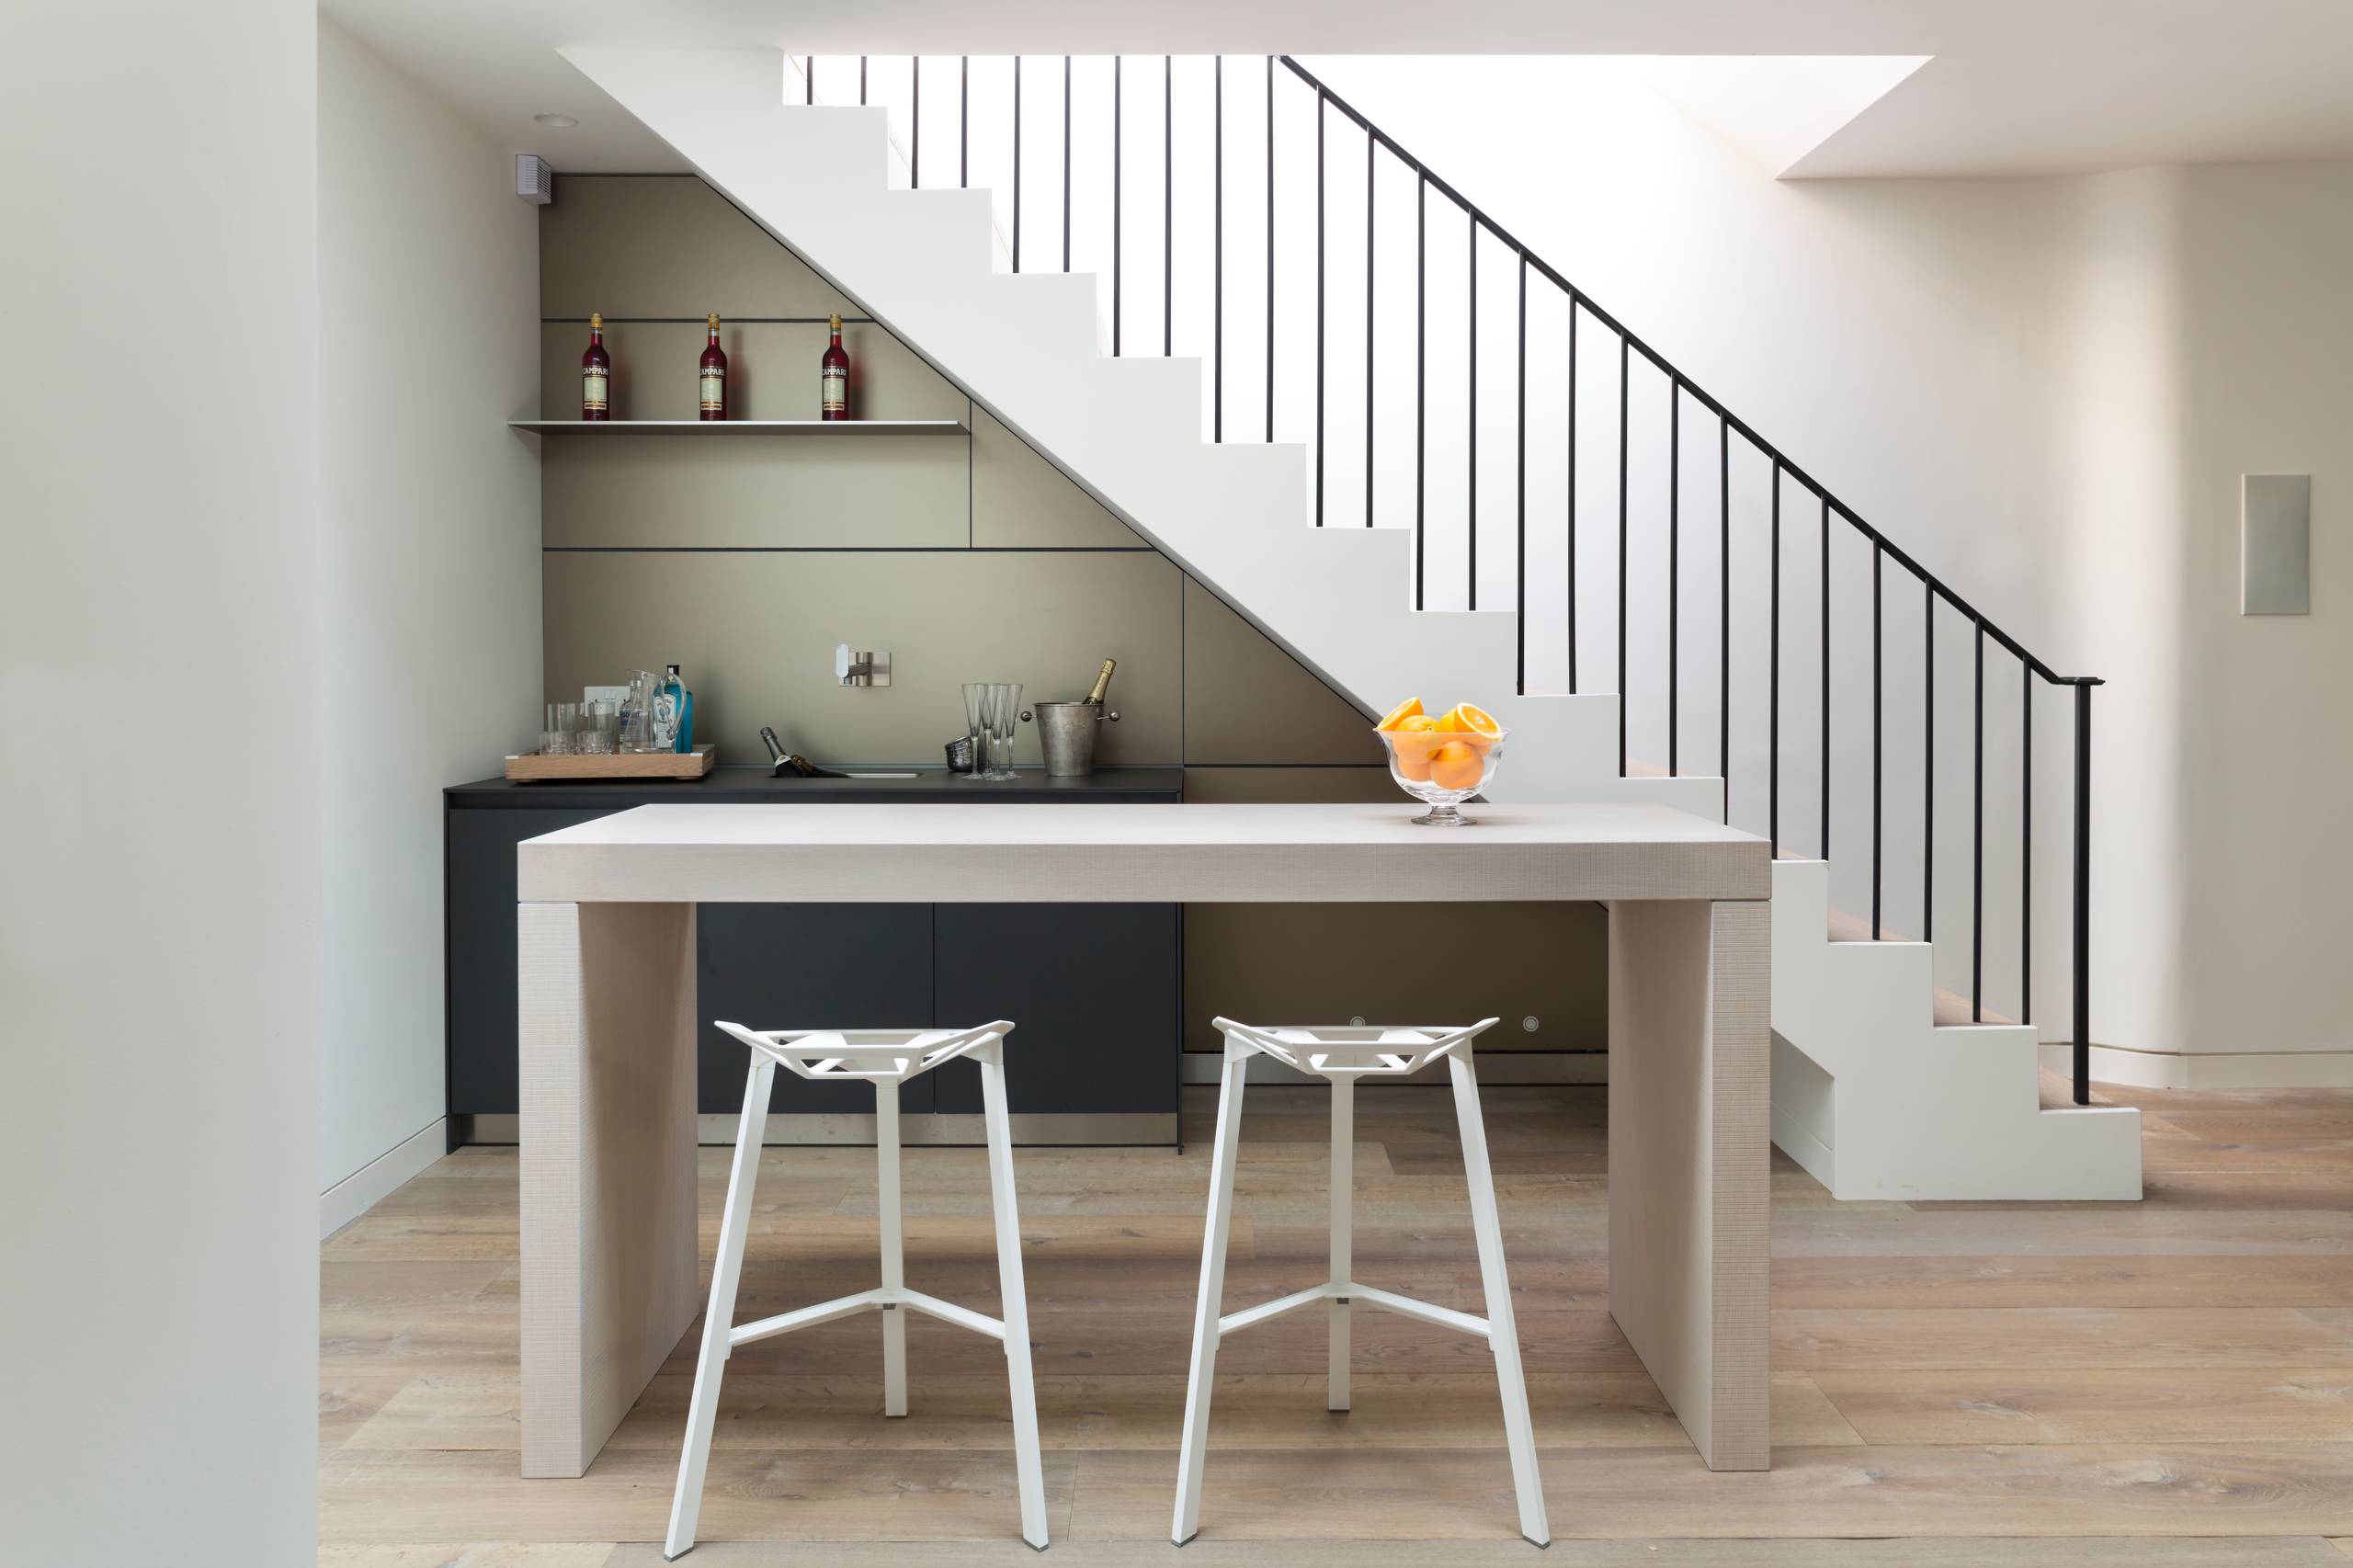 Kitchen Design Under Stairs / 15 Clever Under Stairs Design Ideas To